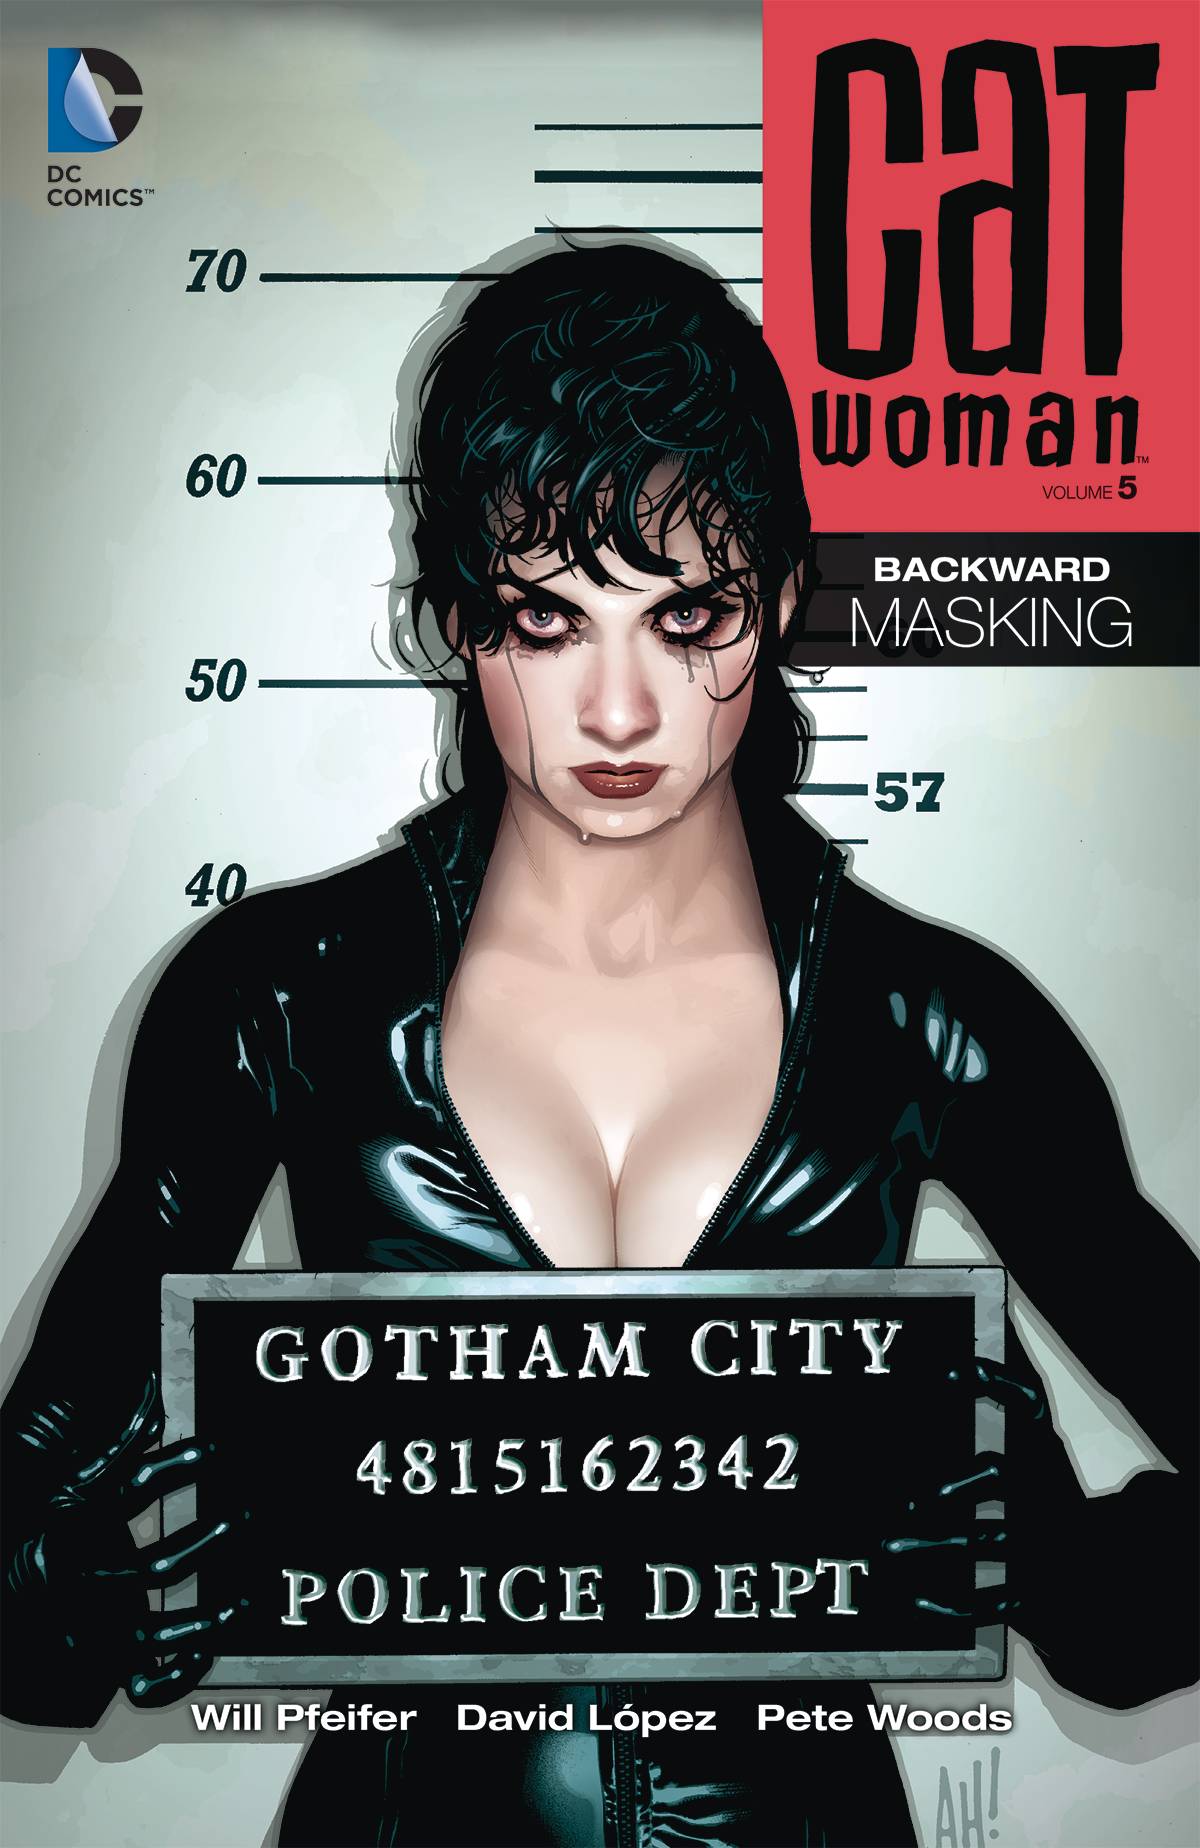 Catwoman Graphic Novel Volume 5 Backward Masking